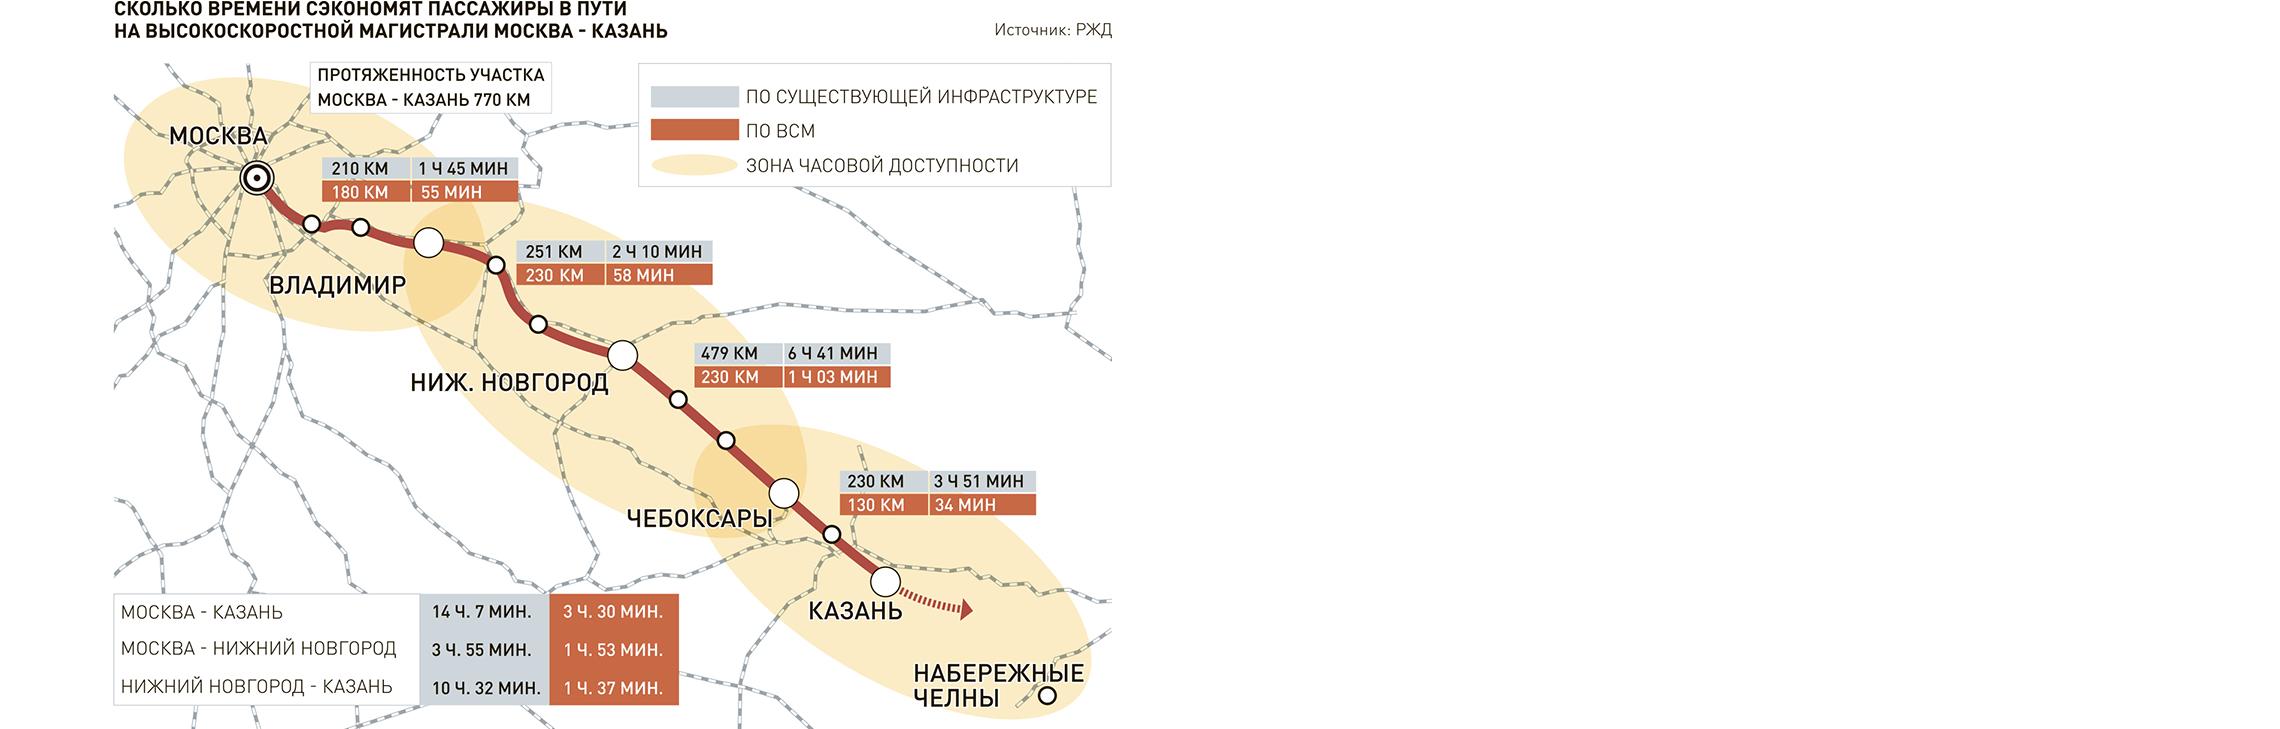 Определен план мероприятий по строительству высокоскоростной железнодорожной магистрали Москва - Казань